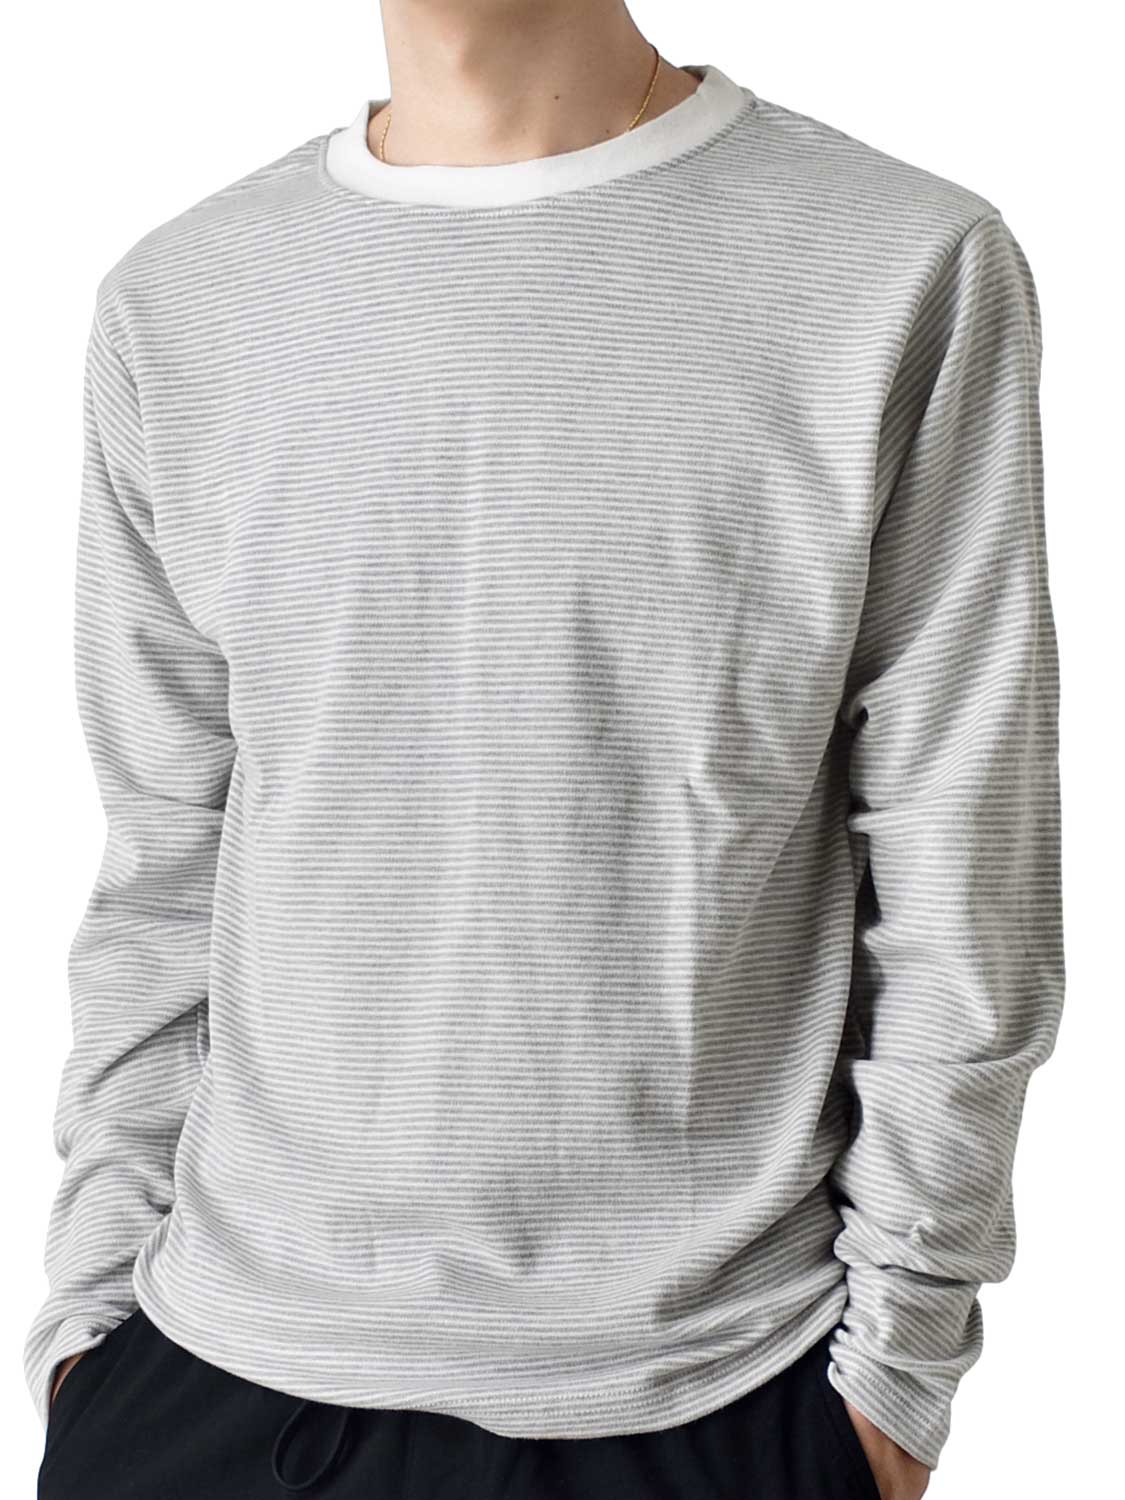 長袖Tシャツ メンズ 微起毛 暖か 送料無料 通販YC カットソー  防寒